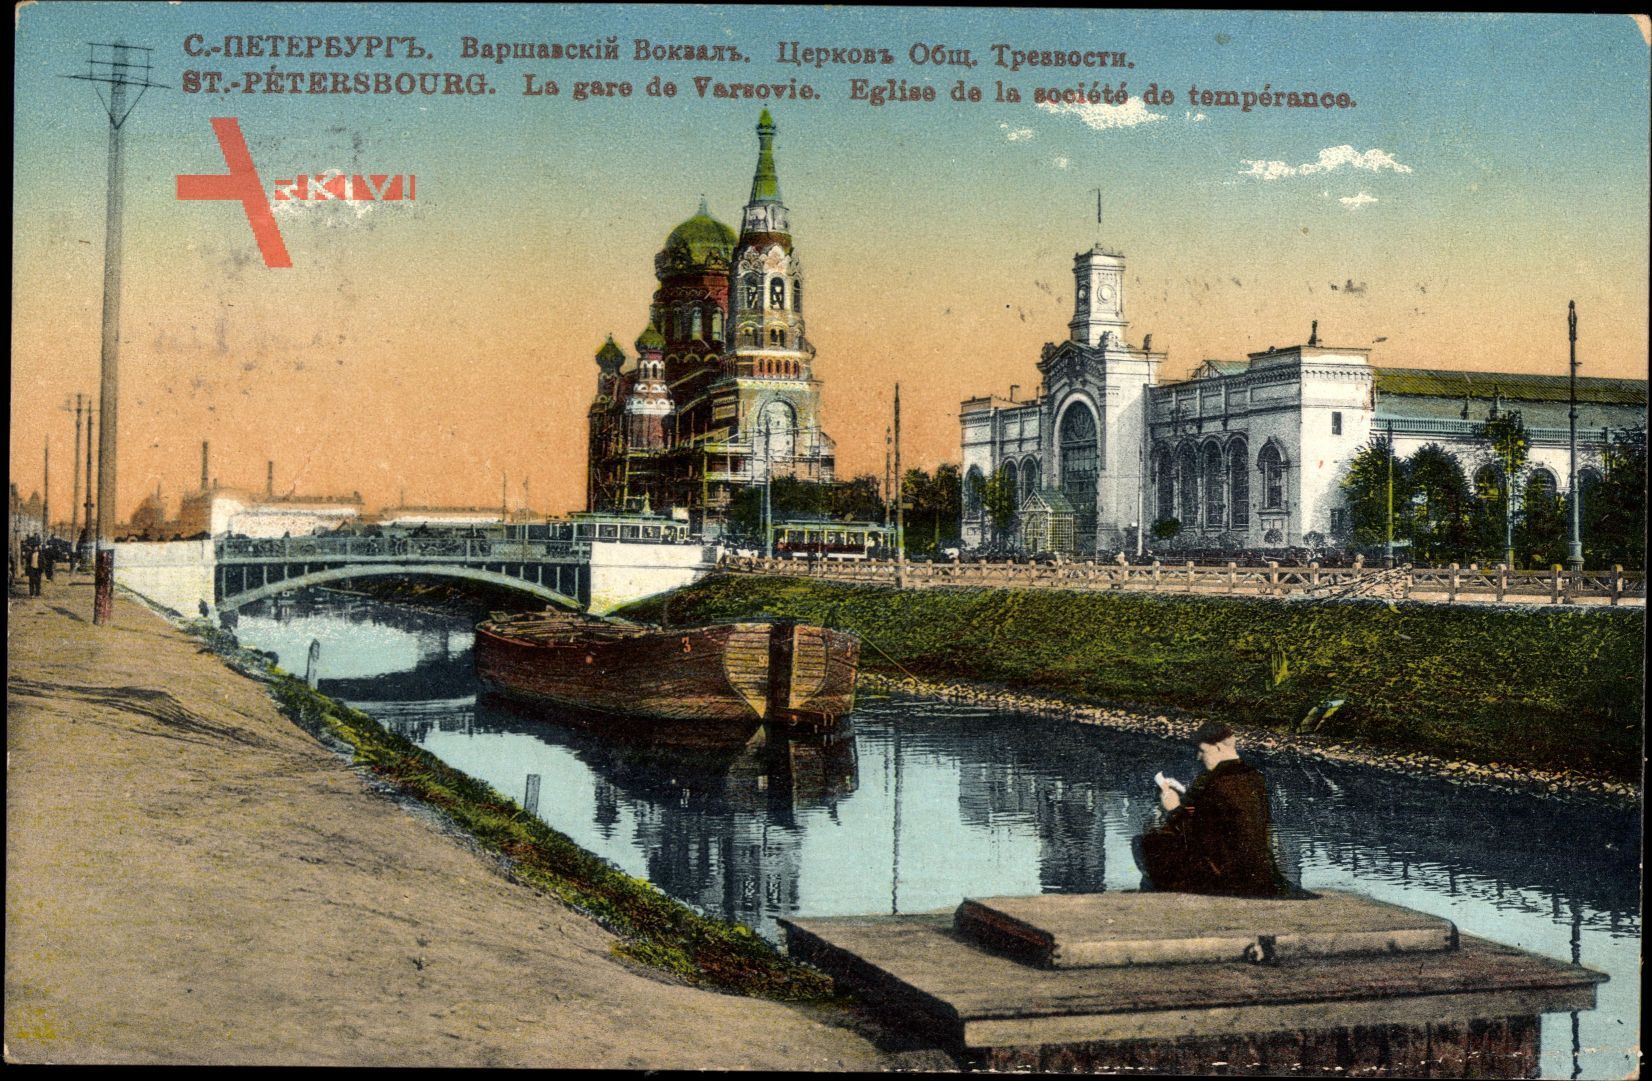 Sankt Petersburg Russland, La gare de Varsovie, Eglise de tempérance